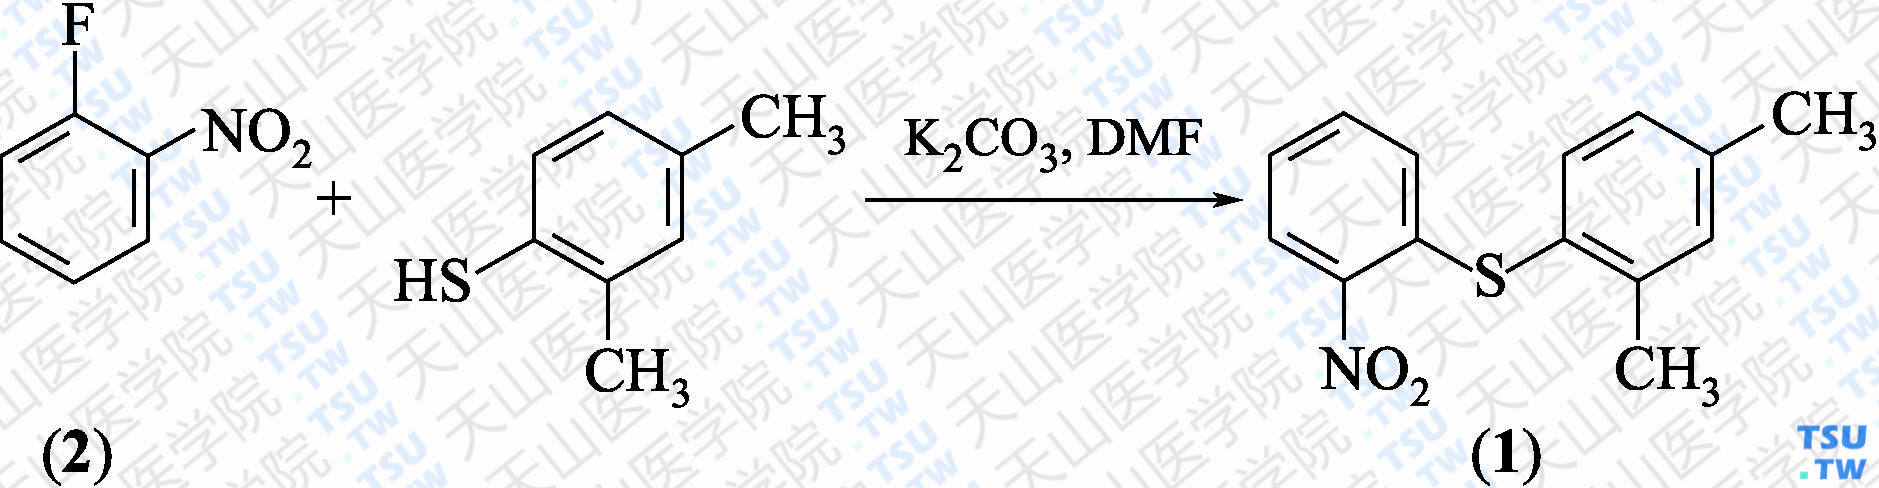 2-（2，4-二甲基苯硫基）硝基苯（分子式：C<sub>14</sub>H<sub>13</sub>NO<sub>2</sub>S）的合成方法路线及其结构式